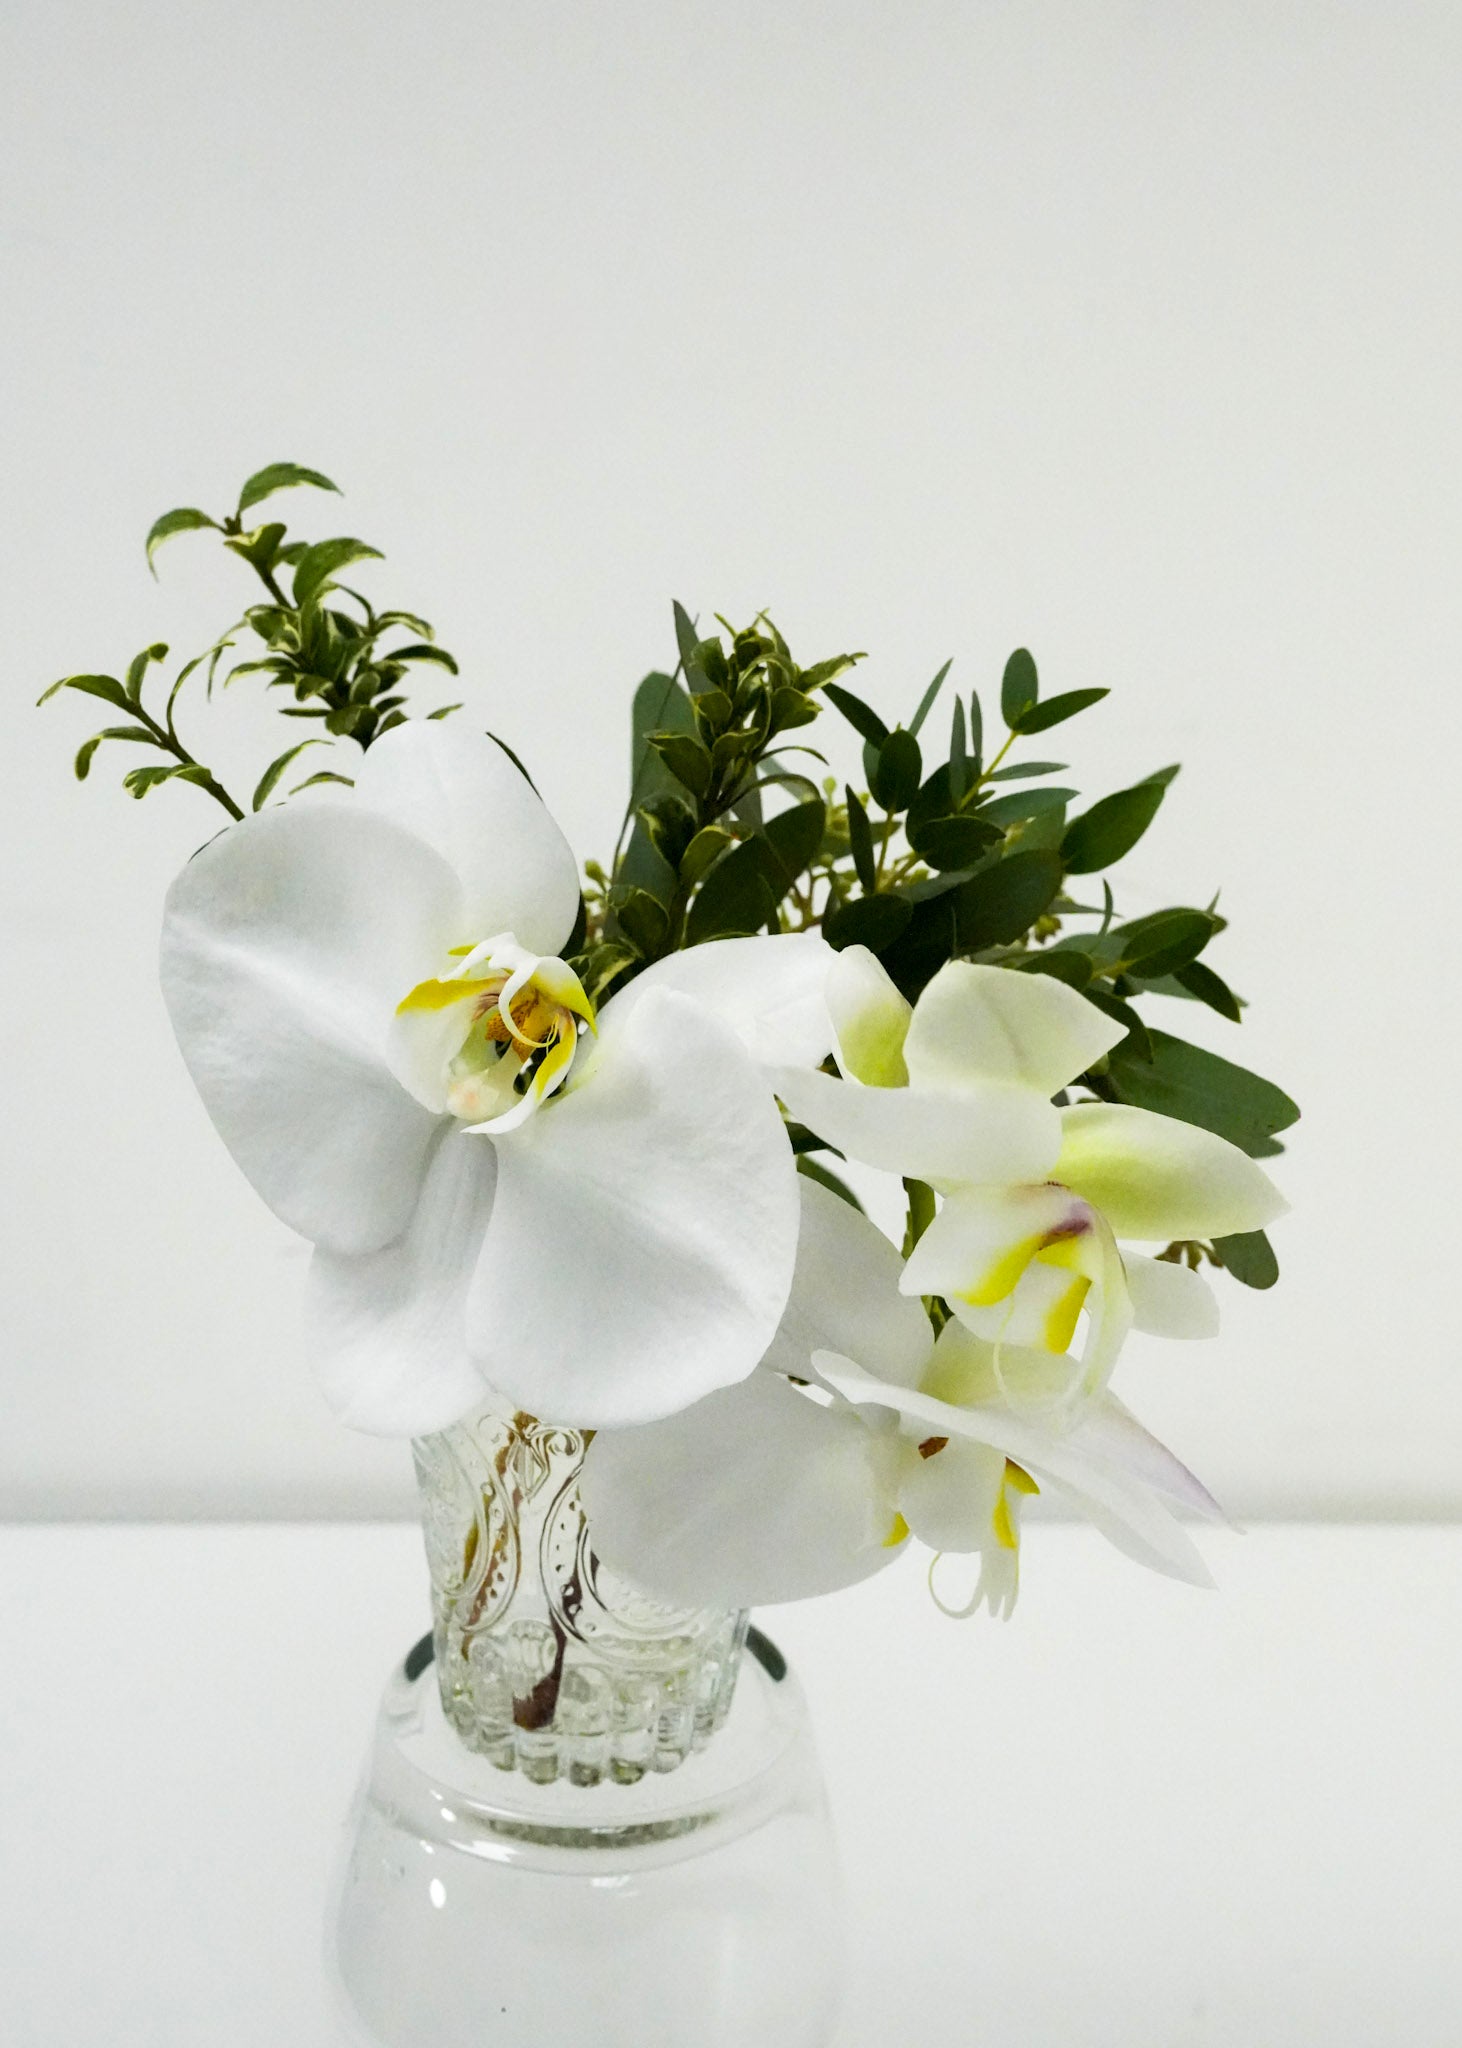 Mini Orchid Arrangement in a Vase